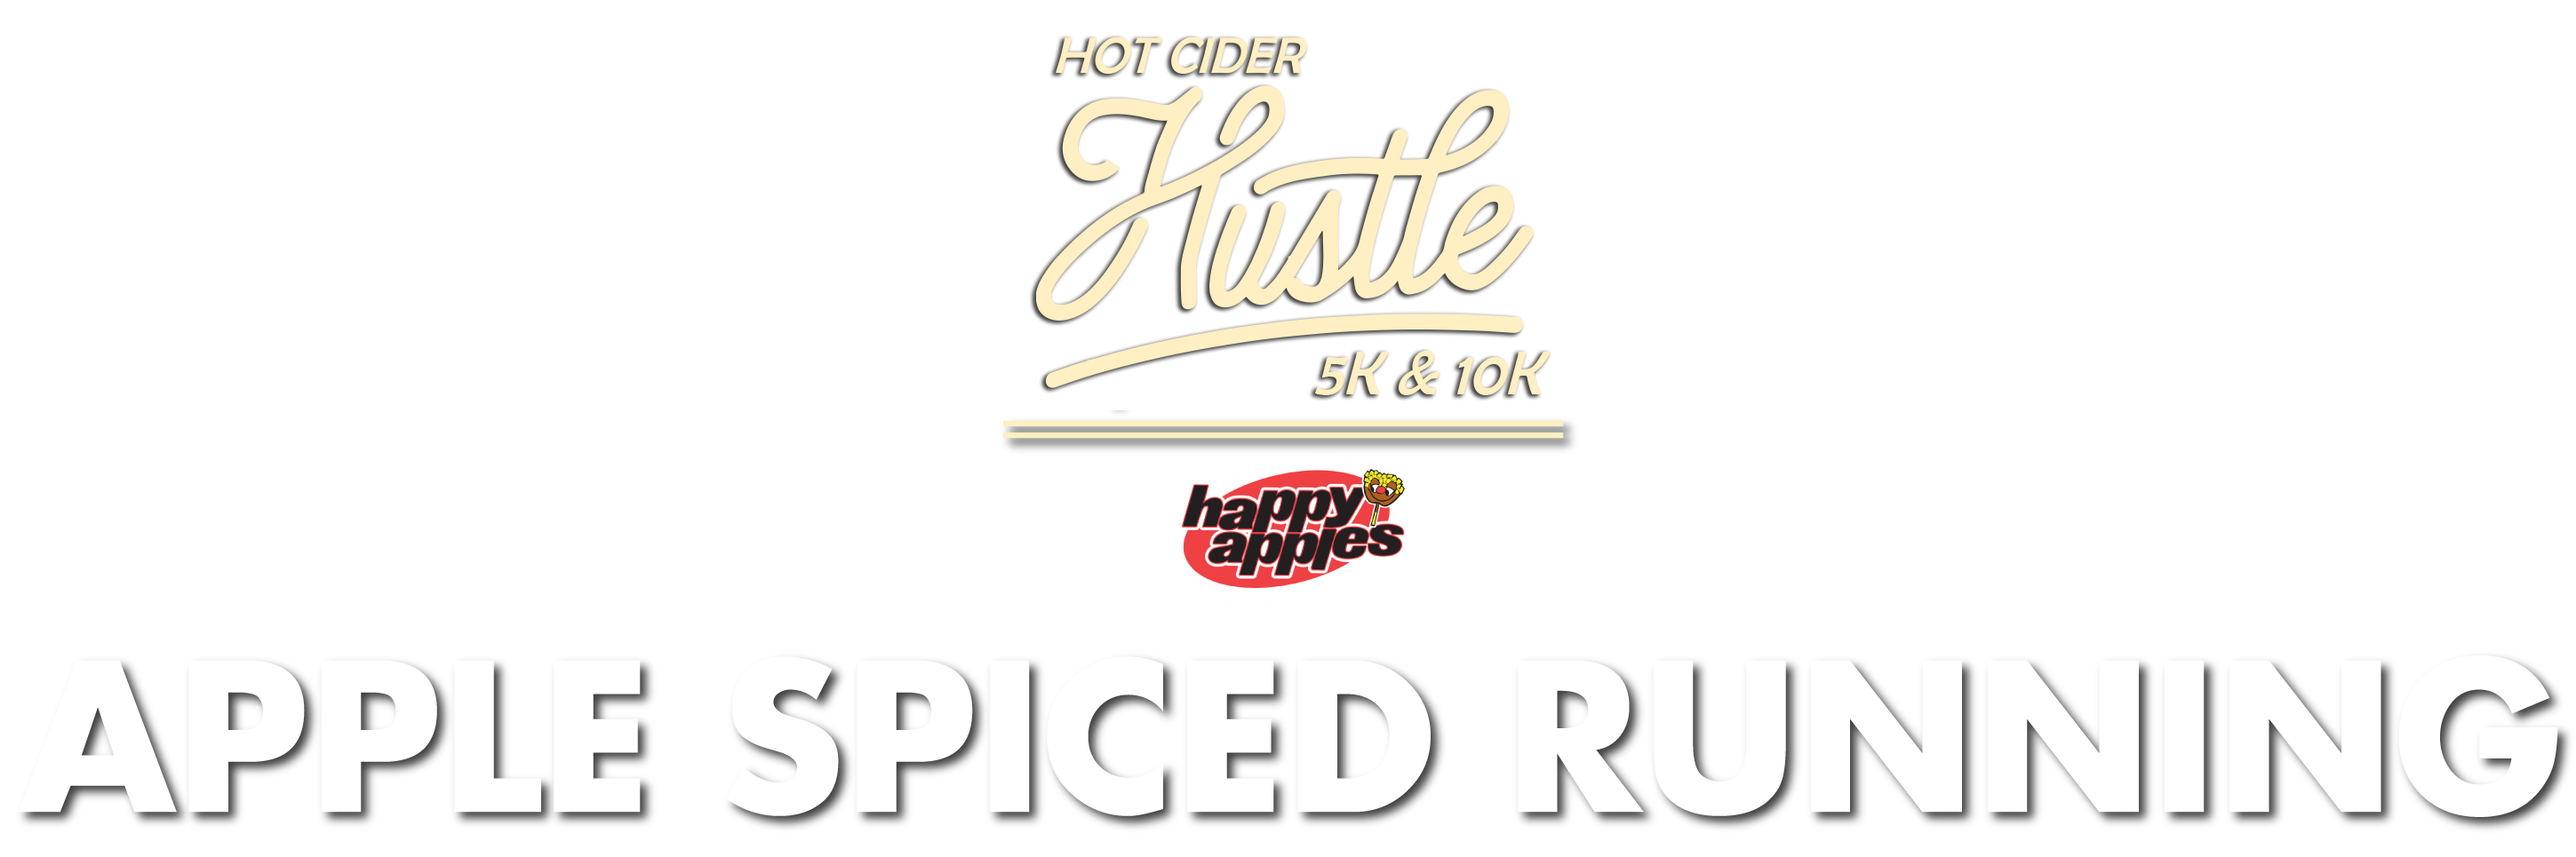 St. Louis Hot Cider Hustle 5K & 10K